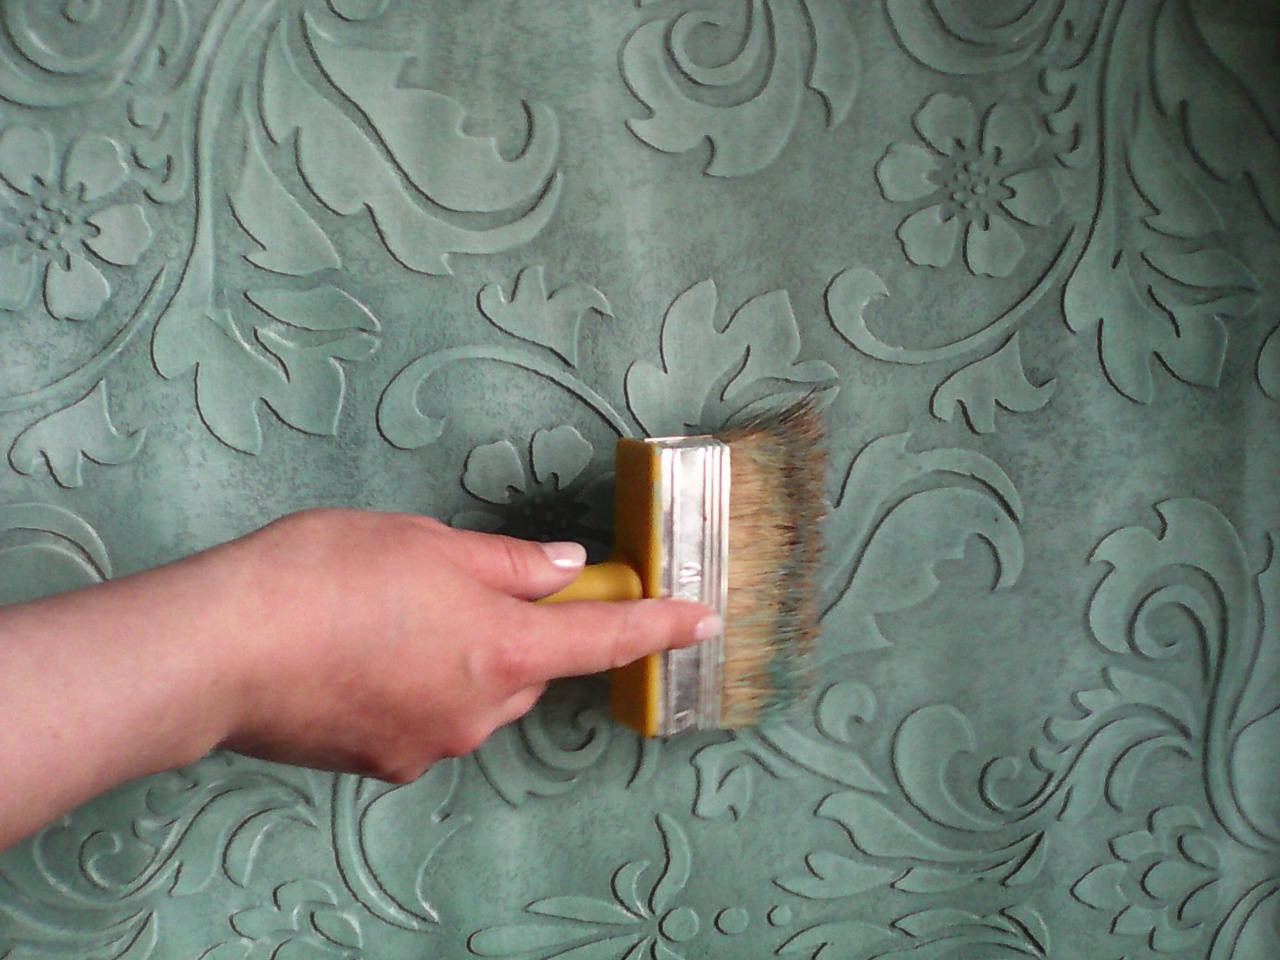 Покраска фона валиком в основной цвет и тамповка методом «сухая кисть» в два цвета для получения эффекта окисления и патины.